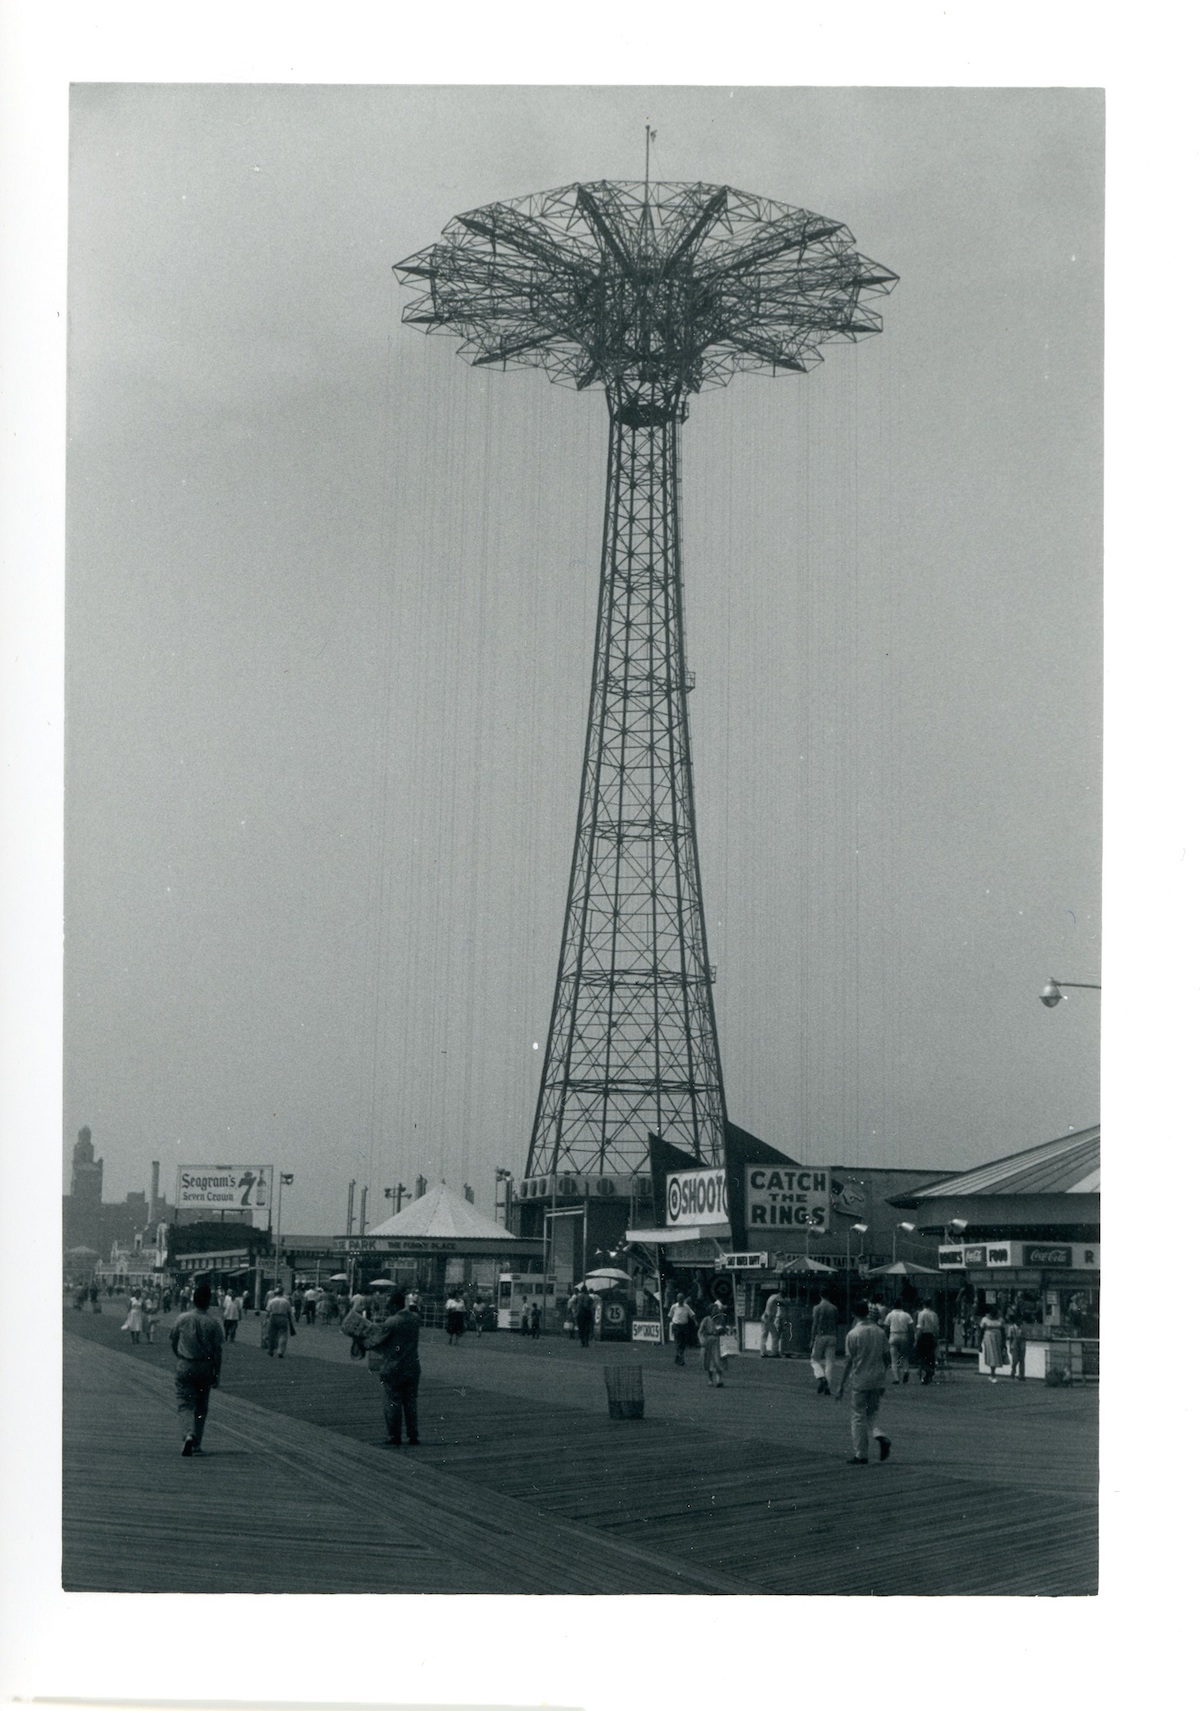 Coney Island funfair 1960s